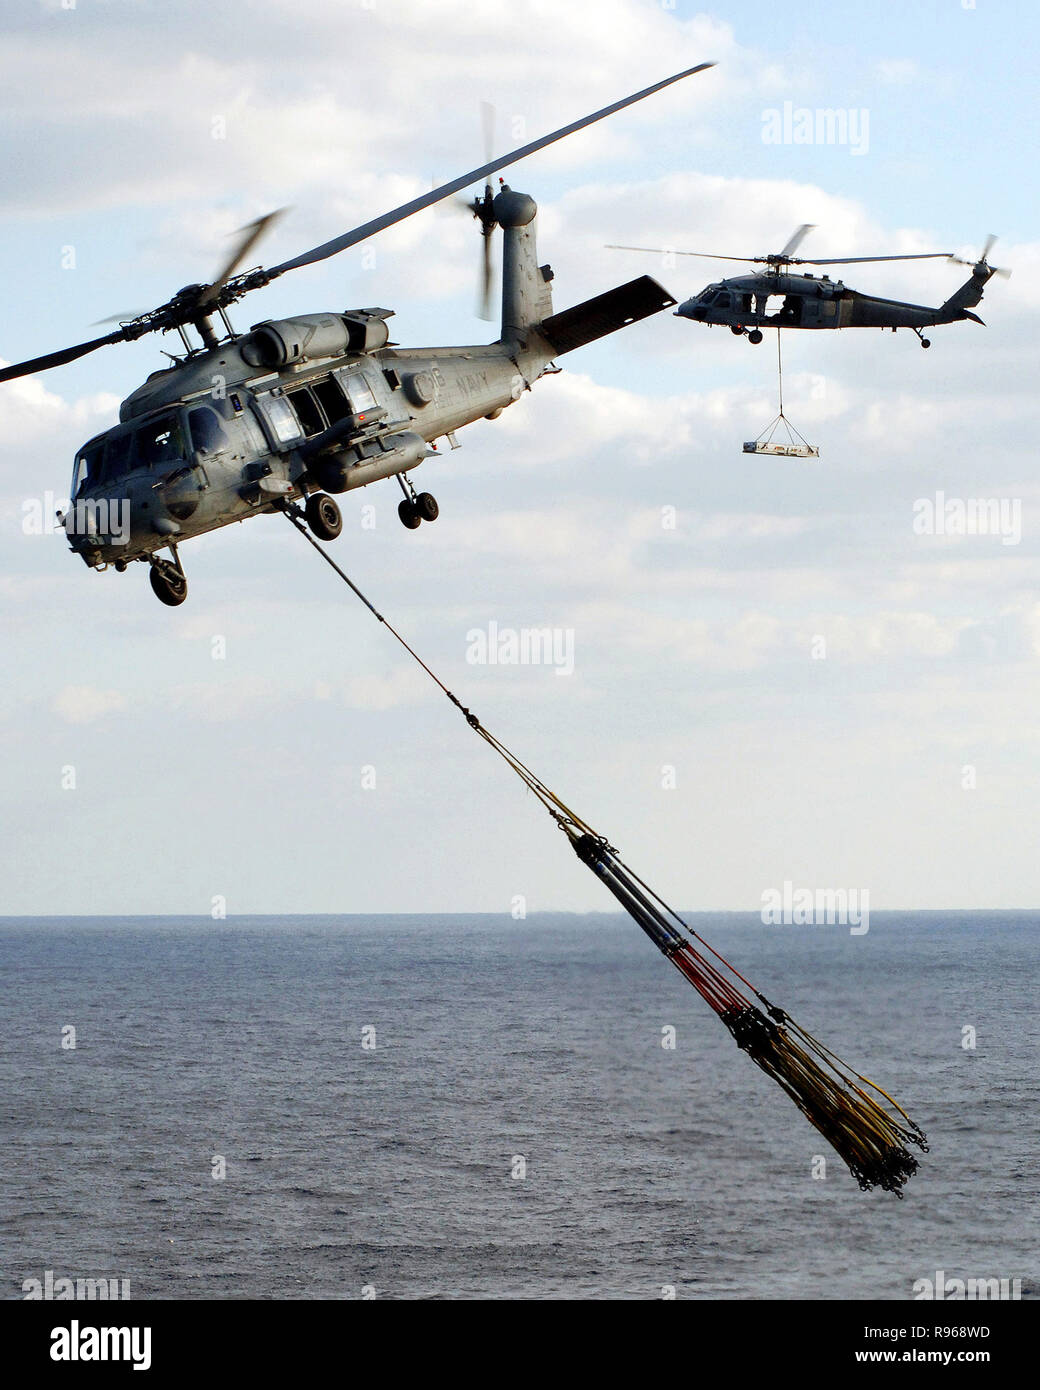 Un hélicoptère HH-60H Seahawk Hélicoptère, de l'Escadron anti-sous-onze (HS-11), s'éloigne de l'envol de la porte-avions nucléaire USS Enterprise (CVN 65) avec plusieurs élingues reconstitution vide en remorque tandis qu'un hélicoptère Seahawk MH-60S, affecté à la baie 'hélicoptère des Raiders de l'escadron de combat de la mer deux huit (HSC-28), l'entreprise se situe près de plage arrière. U.S. Navy photo by Photographer's Mate 3 Classe Kristopher Wilson Banque D'Images